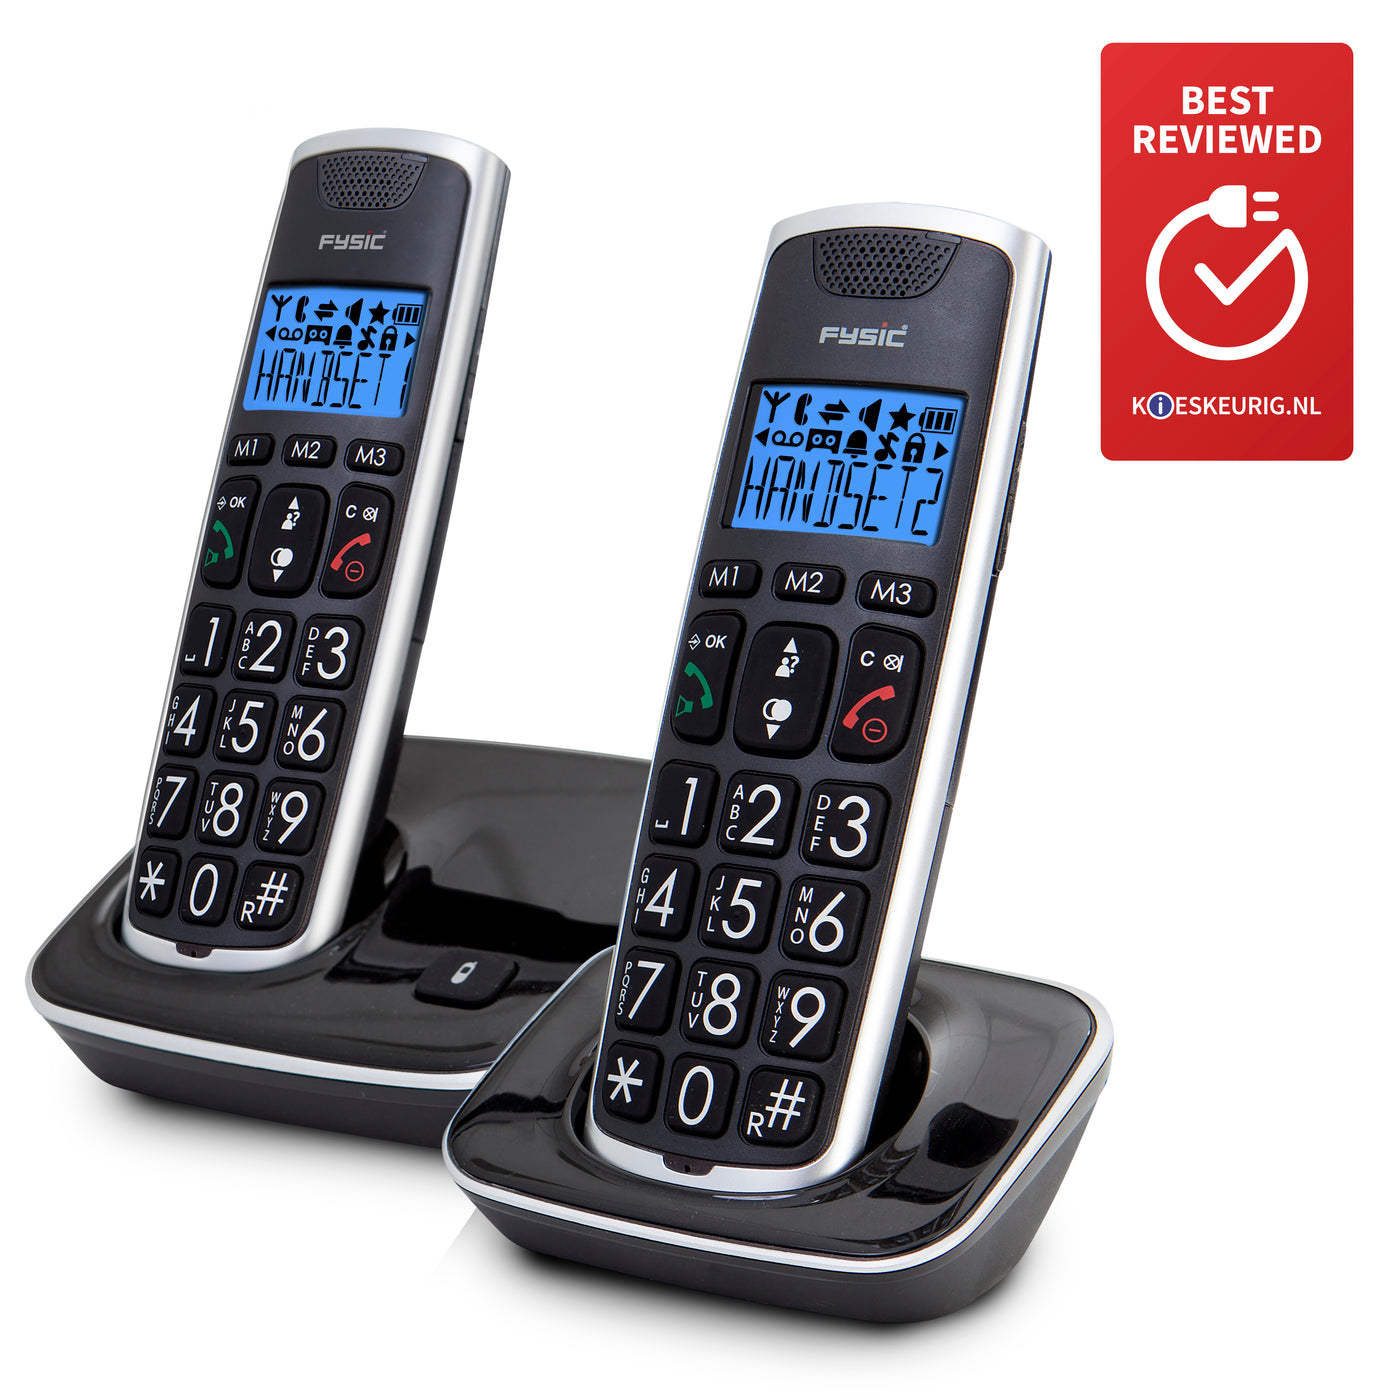 Fysic FX-6020 - Senioren DECT telefoon met grote toetsen en 2 handsets, zwart